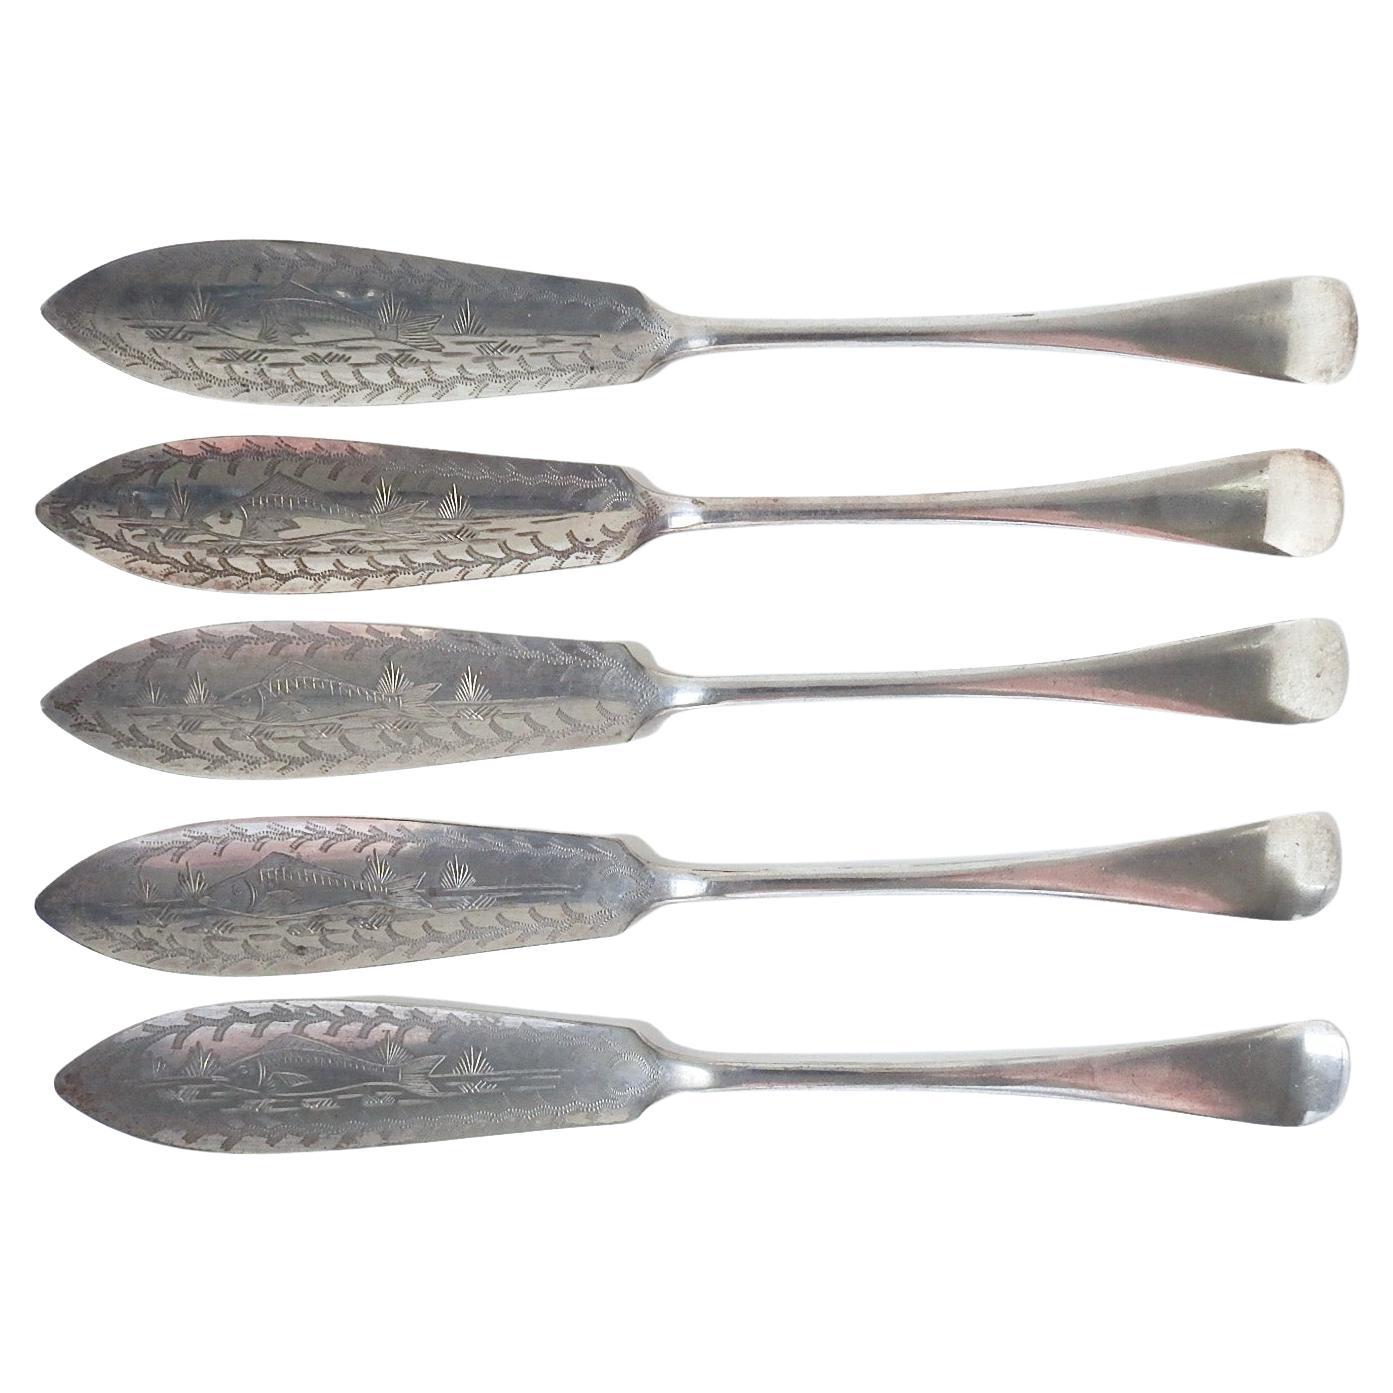 Couteaux à poisson anciens en métal argenté gravé - Lot de 5